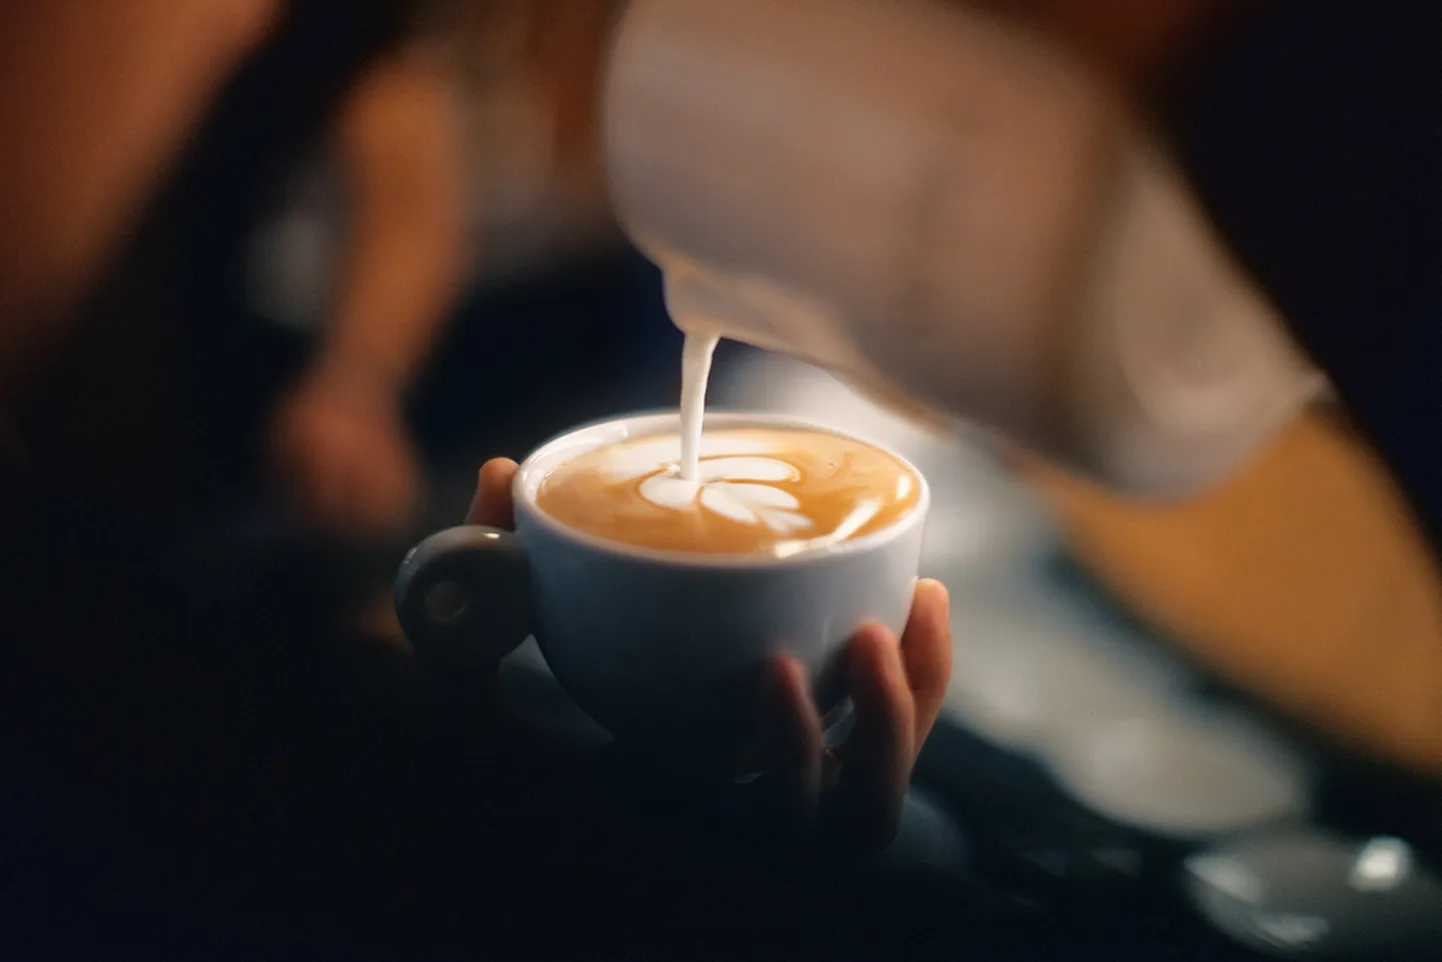 Kofeiinivaba kohv on jook, mis on valmistatud kohviubadest, millest on eemaldatud pea kogu kofeiin.